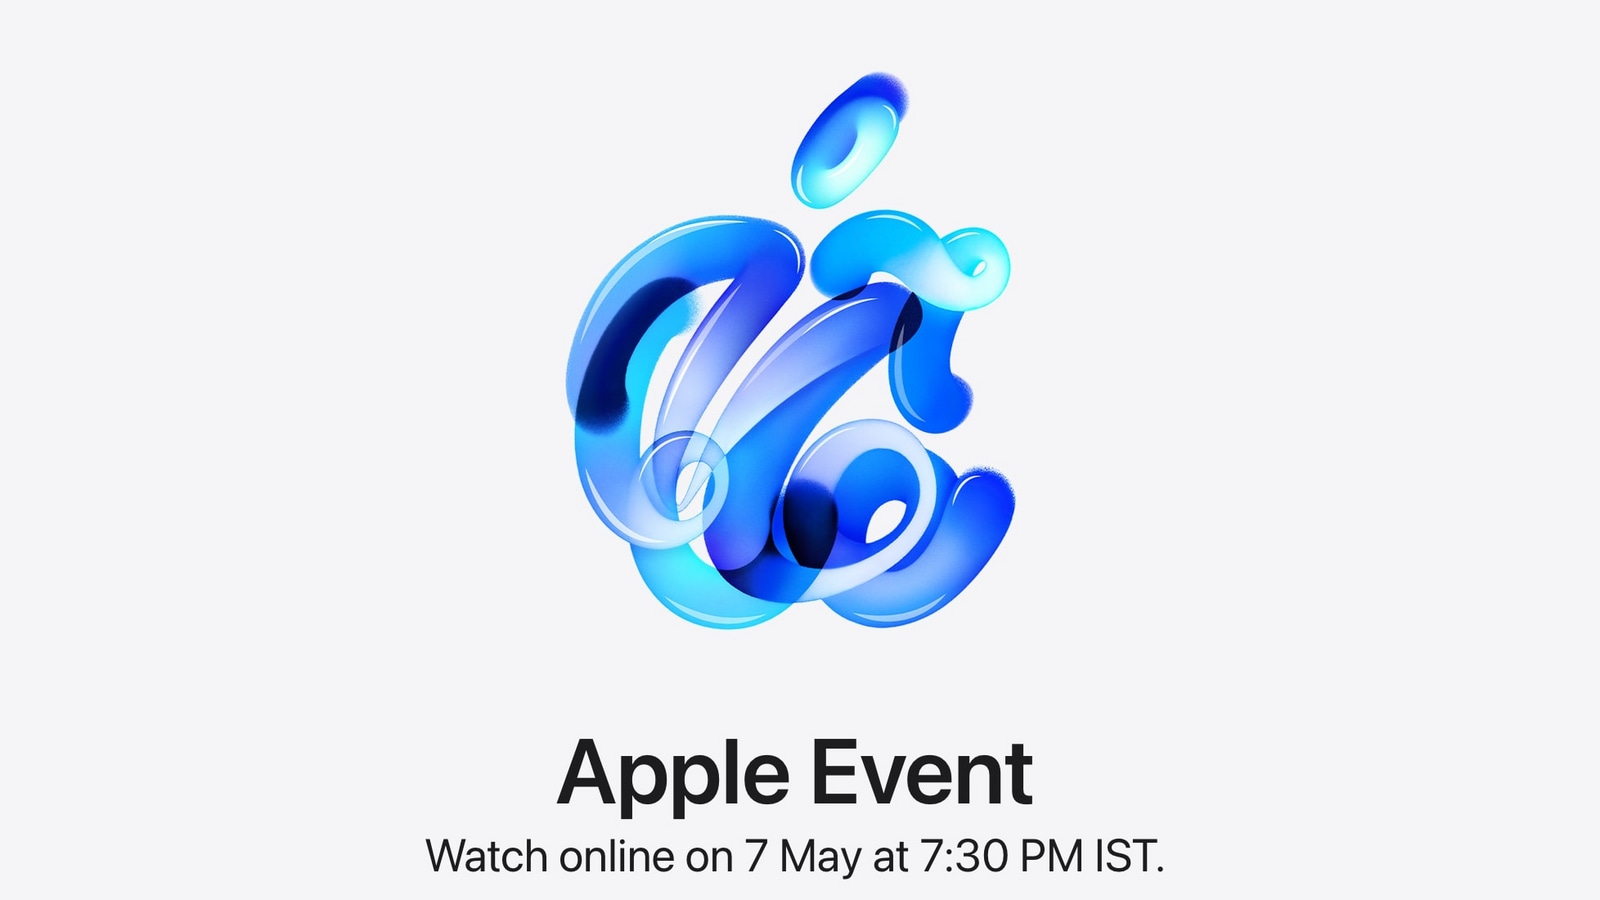 L’événement de lancement d’Apple iPad Pro et iPad Air durera environ 35 minutes : rapport